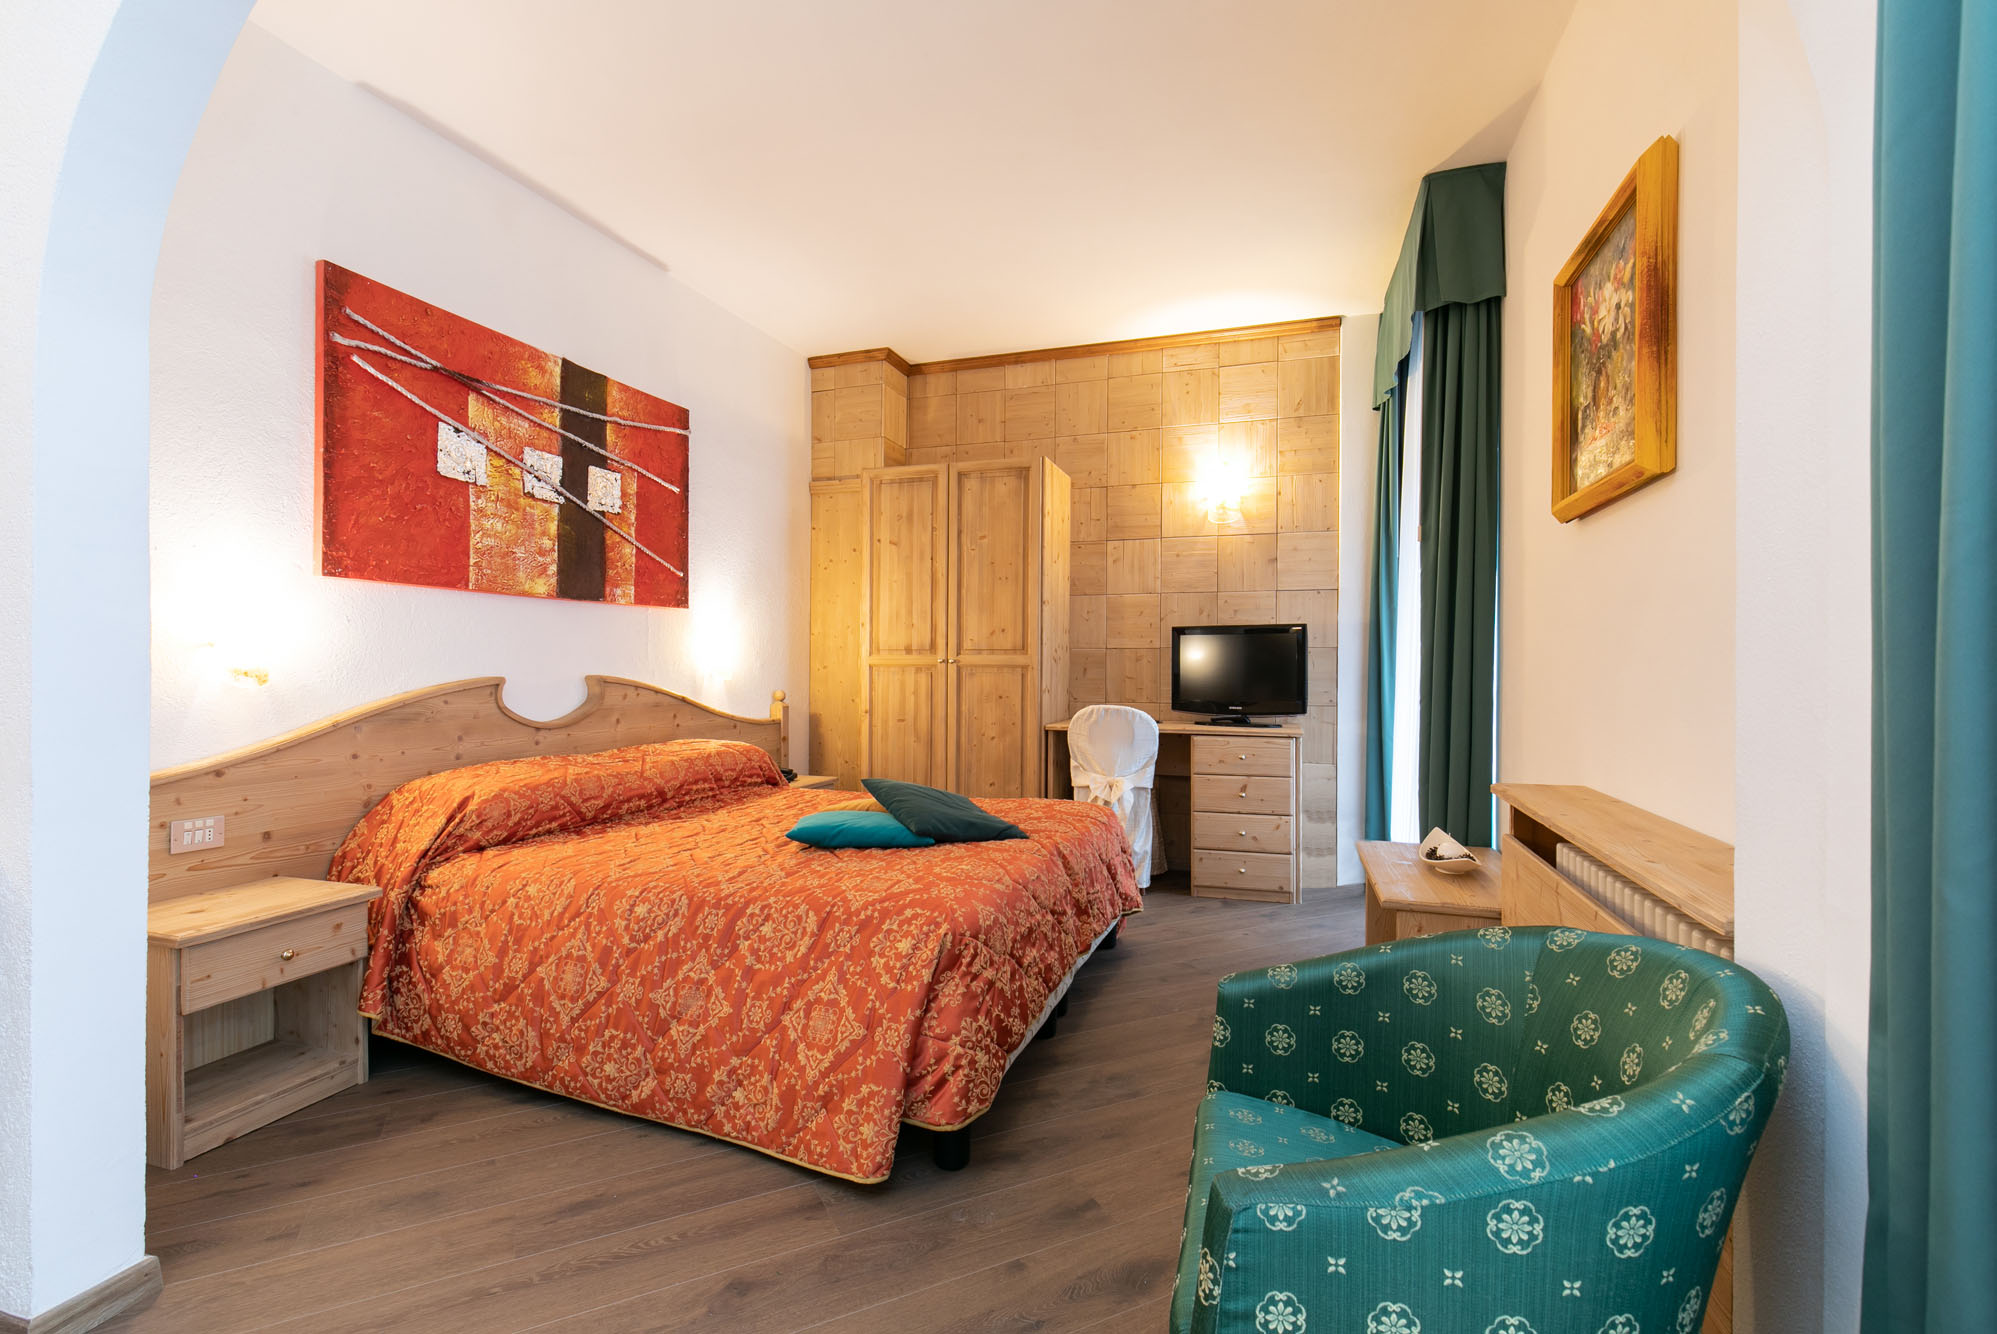 Camera Superior Room per 4 persone di Grand Hotel des Alpes in centro a San Martino di Castrozza